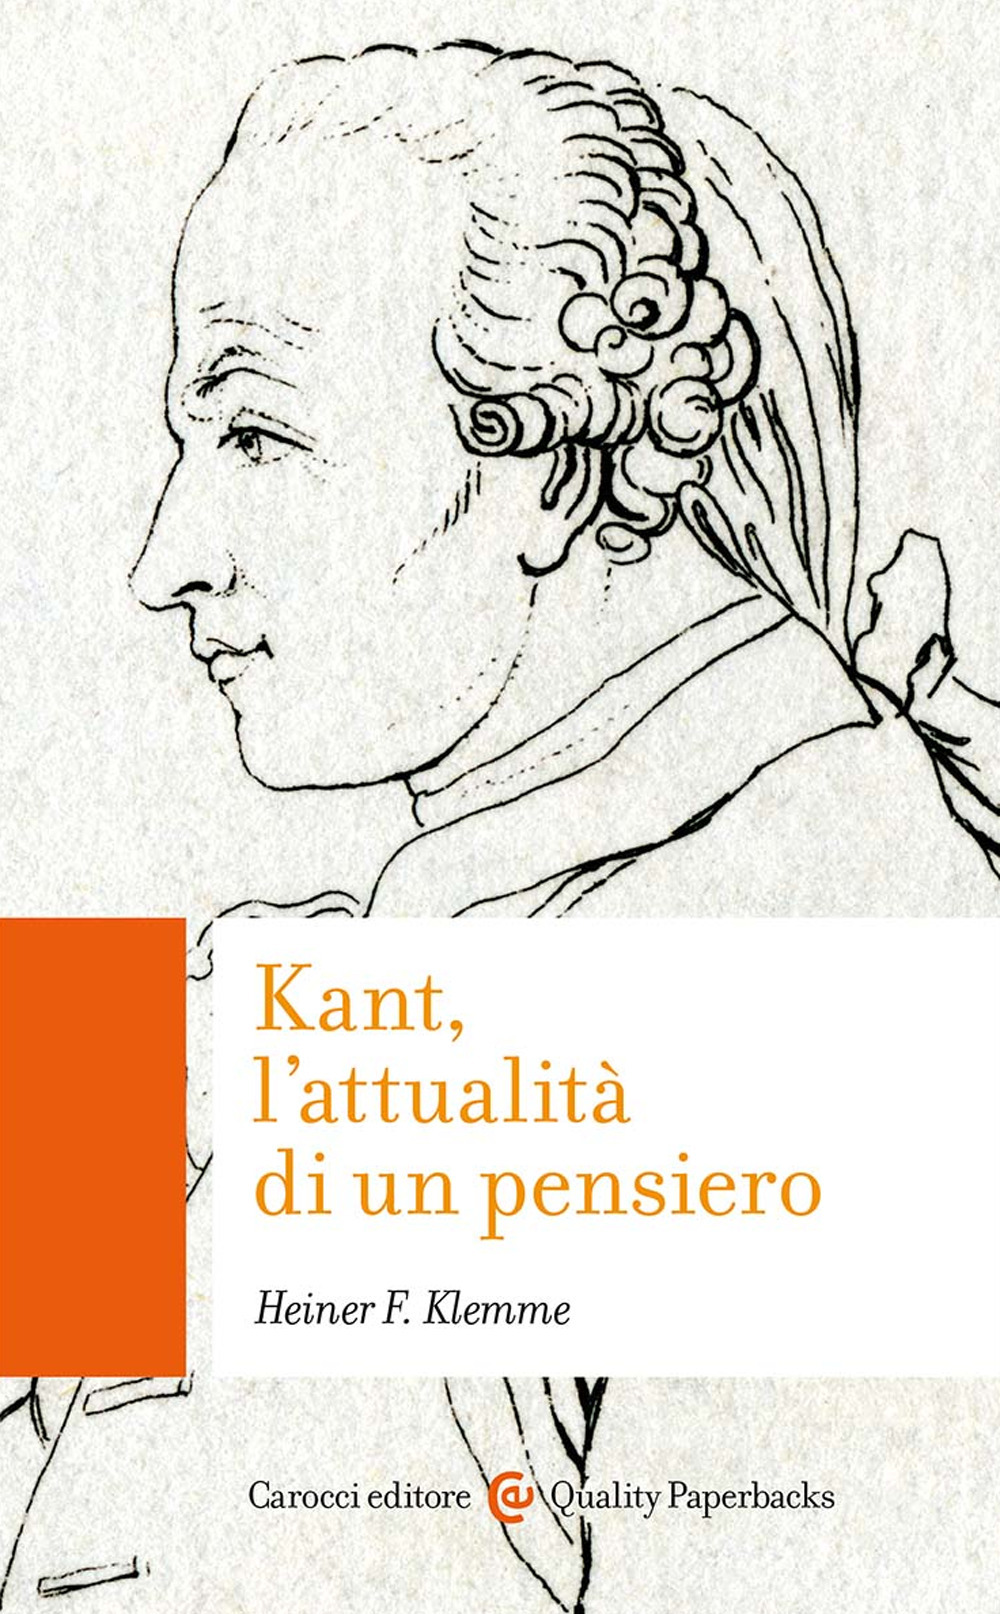 Kant, l'attualità di un pensiero